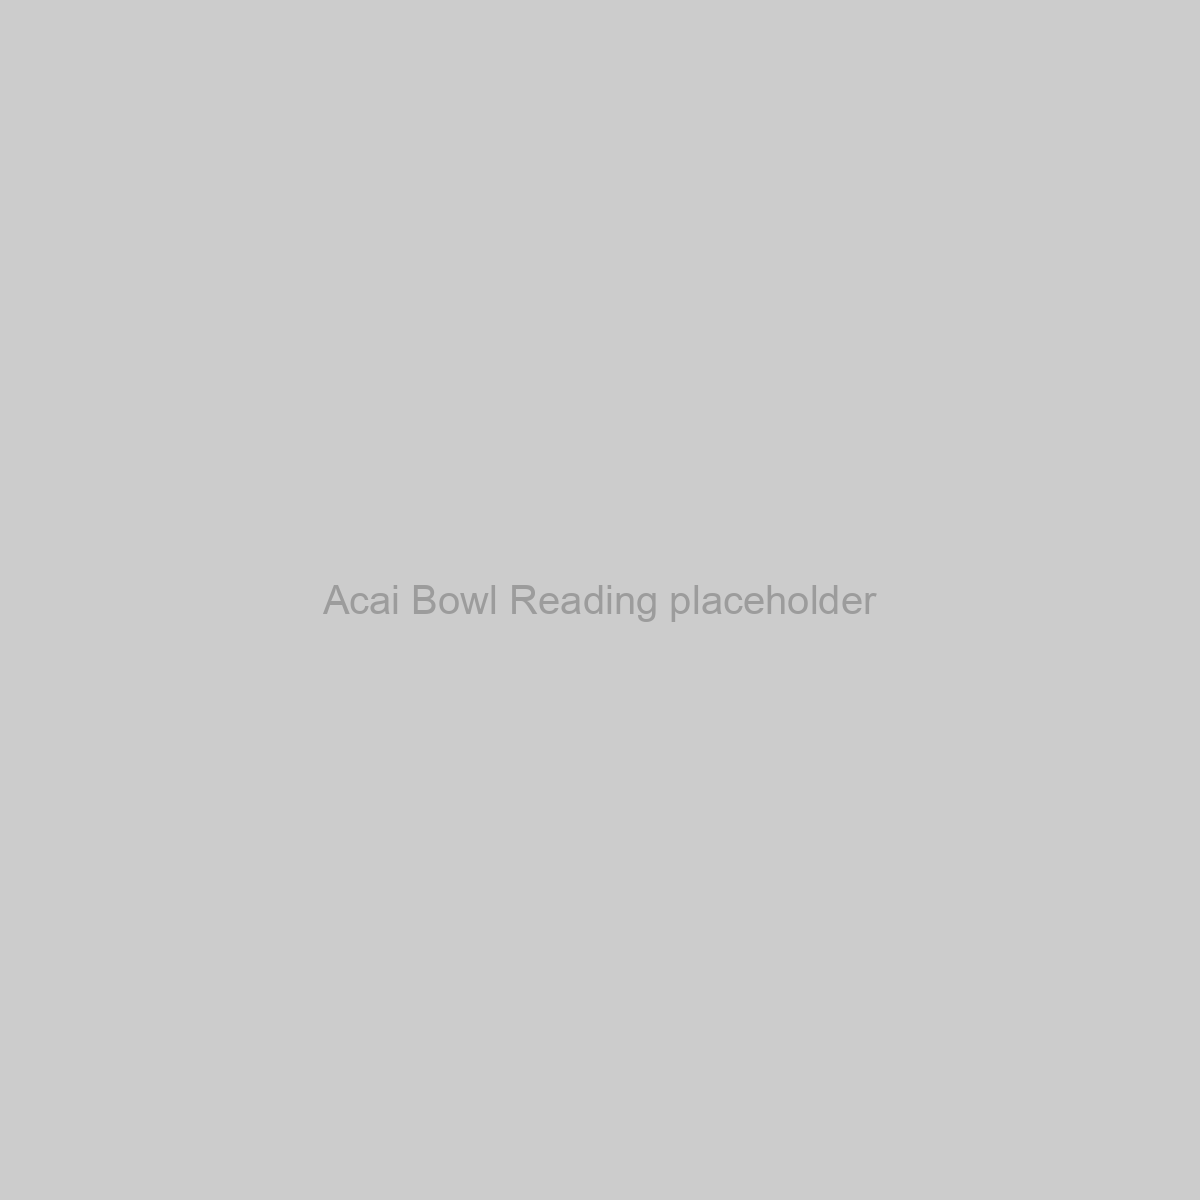 Acai Bowl Reading Placeholder Image